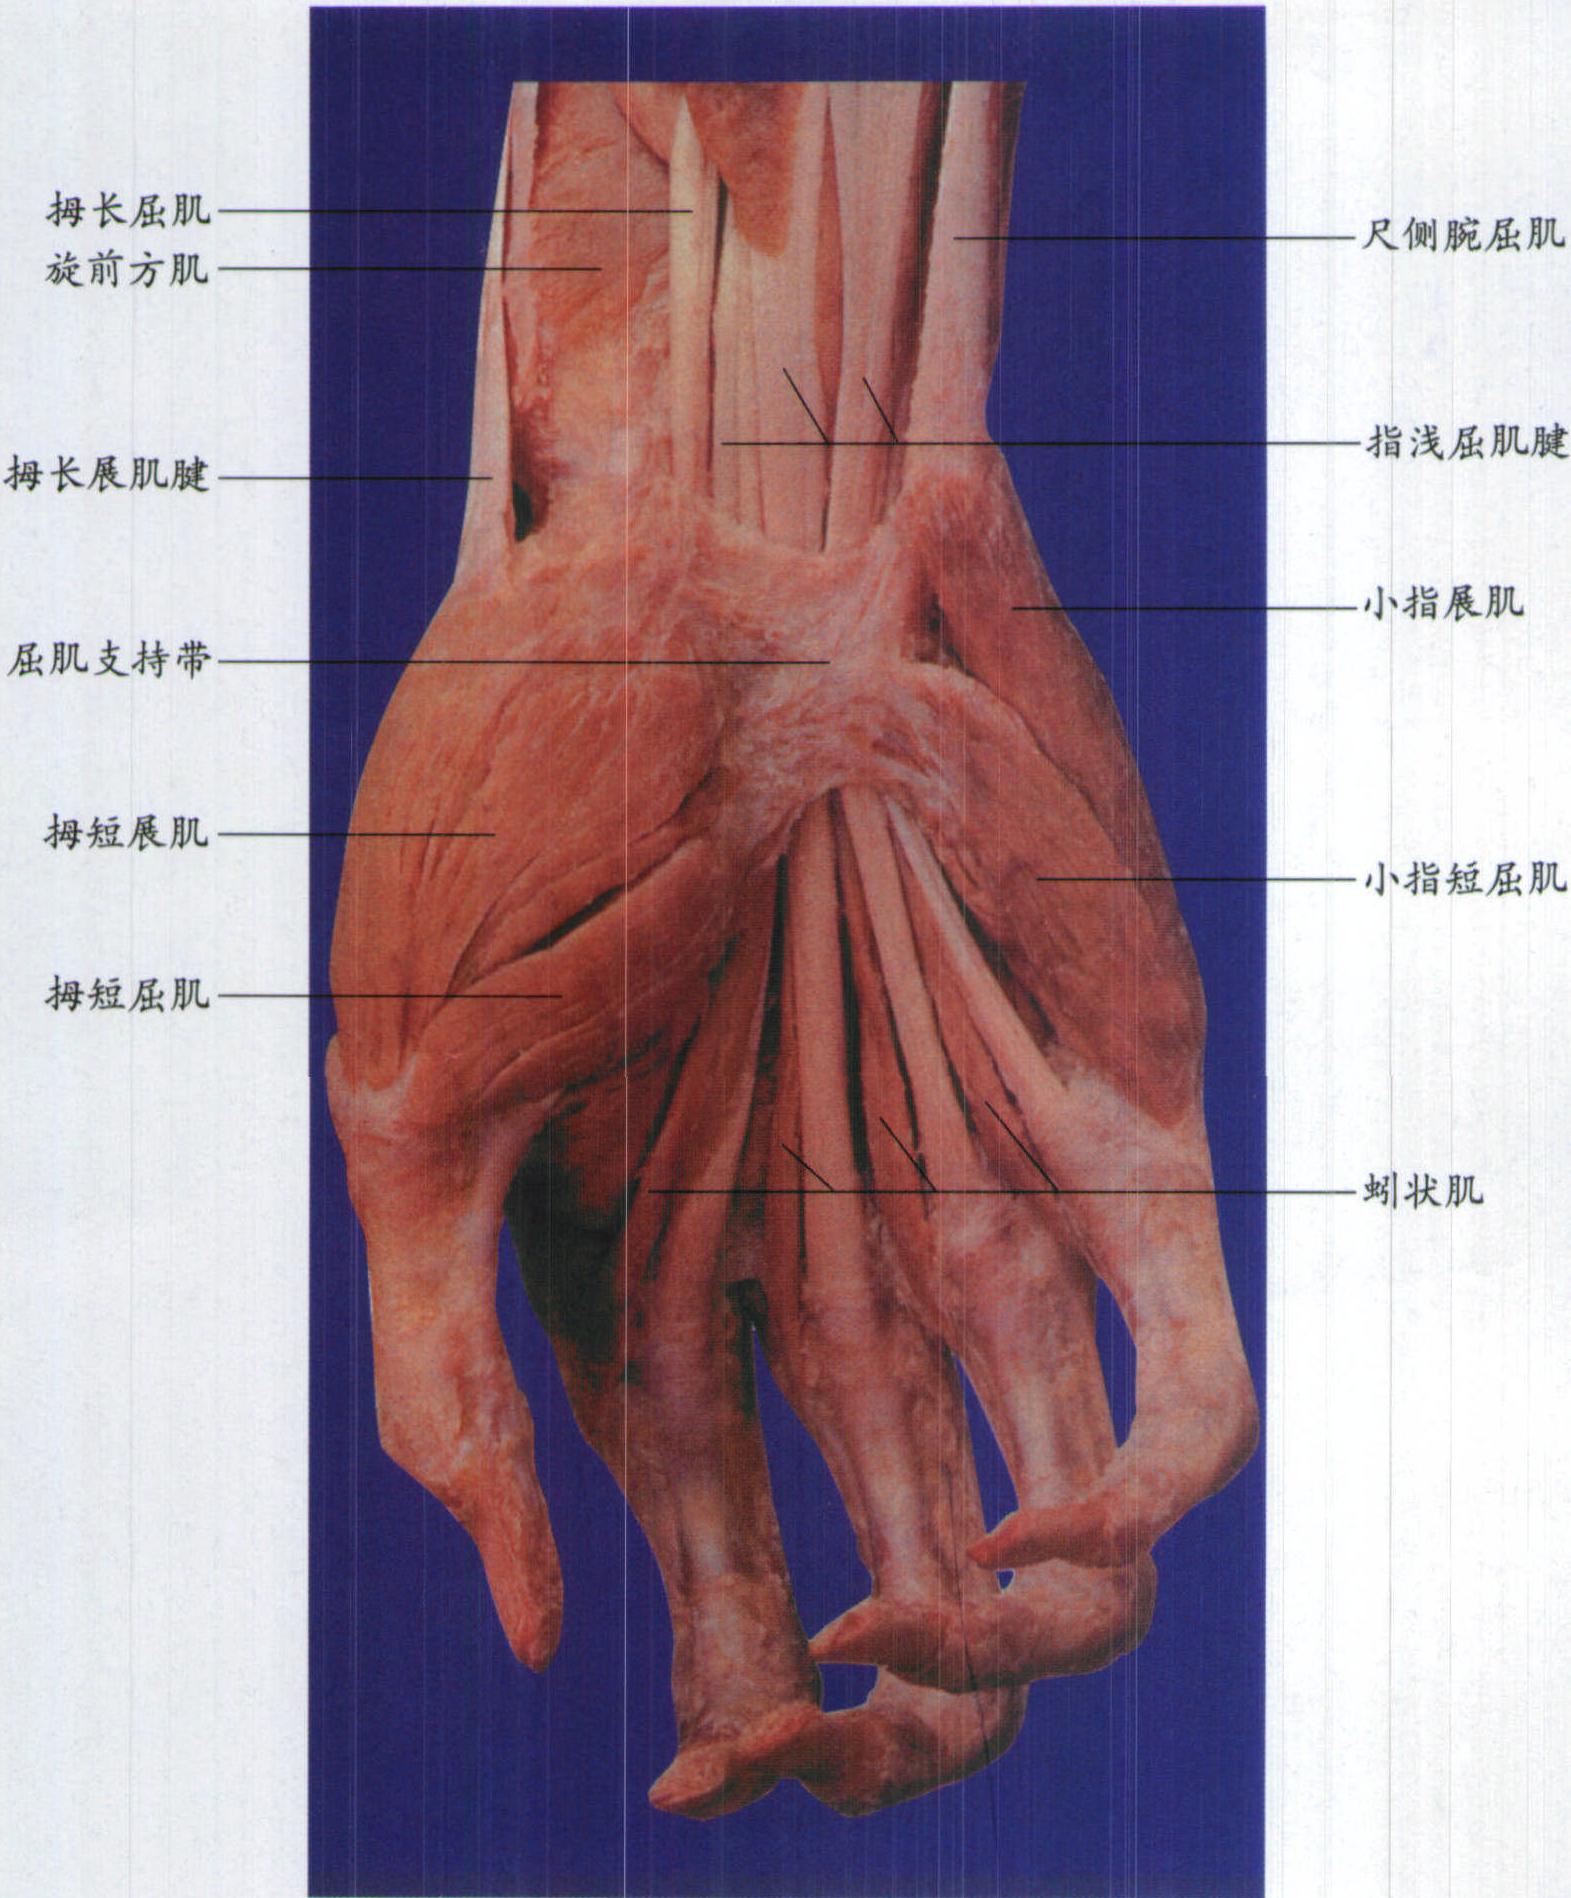 图1-3-64 足底浅层肌-基础医学-医学